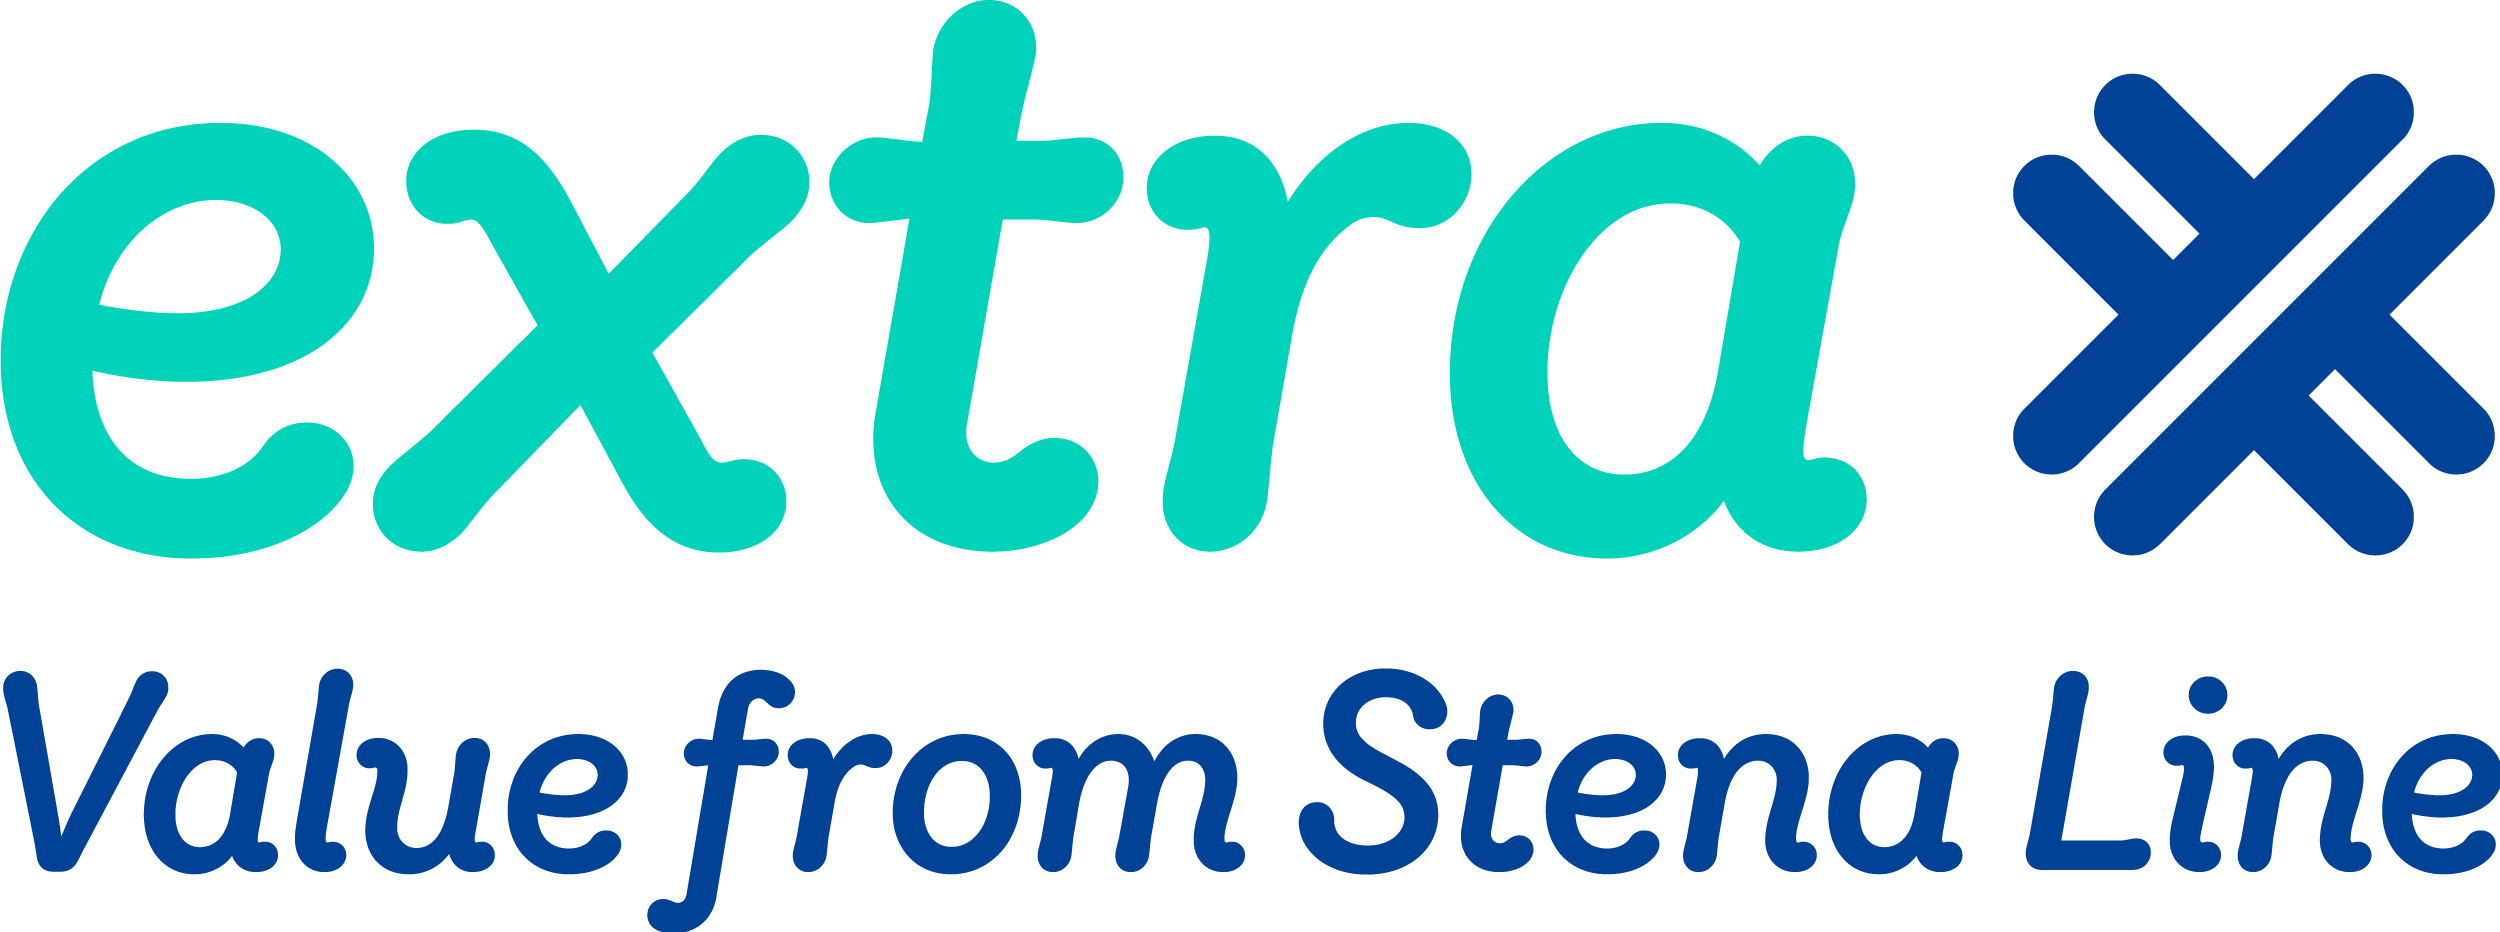 Logga för Stena Lines medlemsklubb ”Extra”.